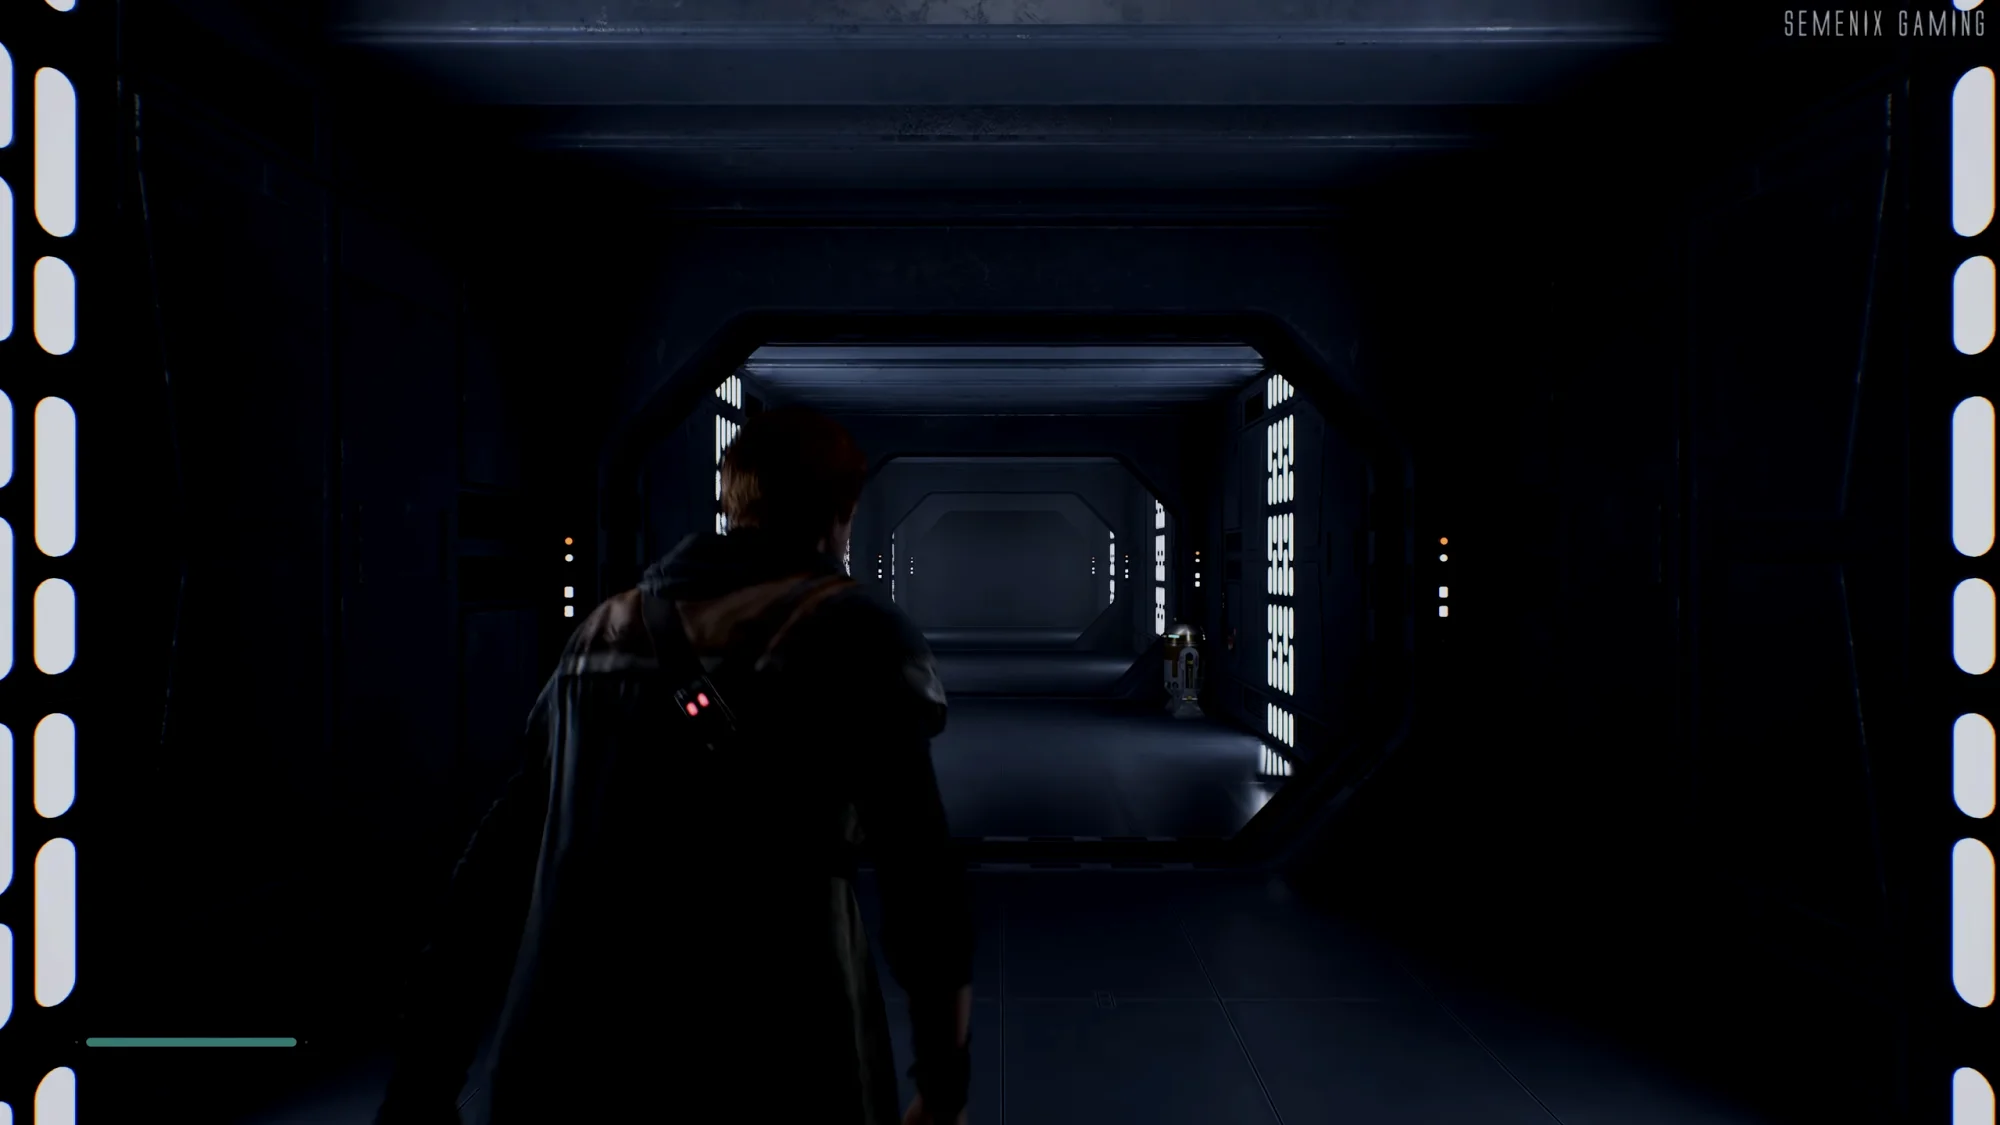 转身后，刚才经过的车厢变成了帝国基地走廊